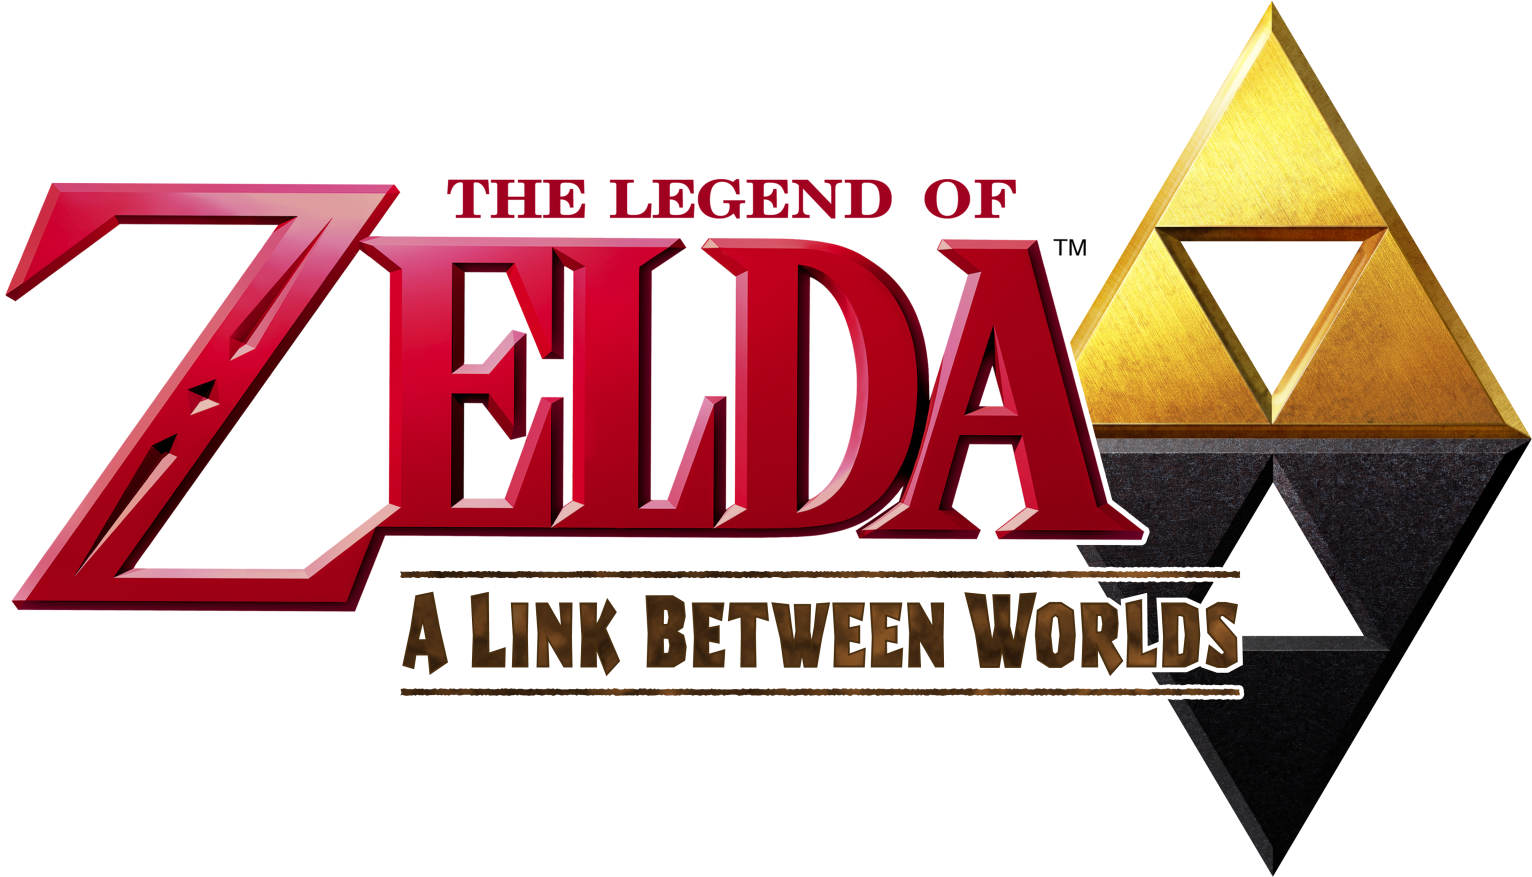 Download PNG image - The Legend of Zelda Logo Transparent PNG 